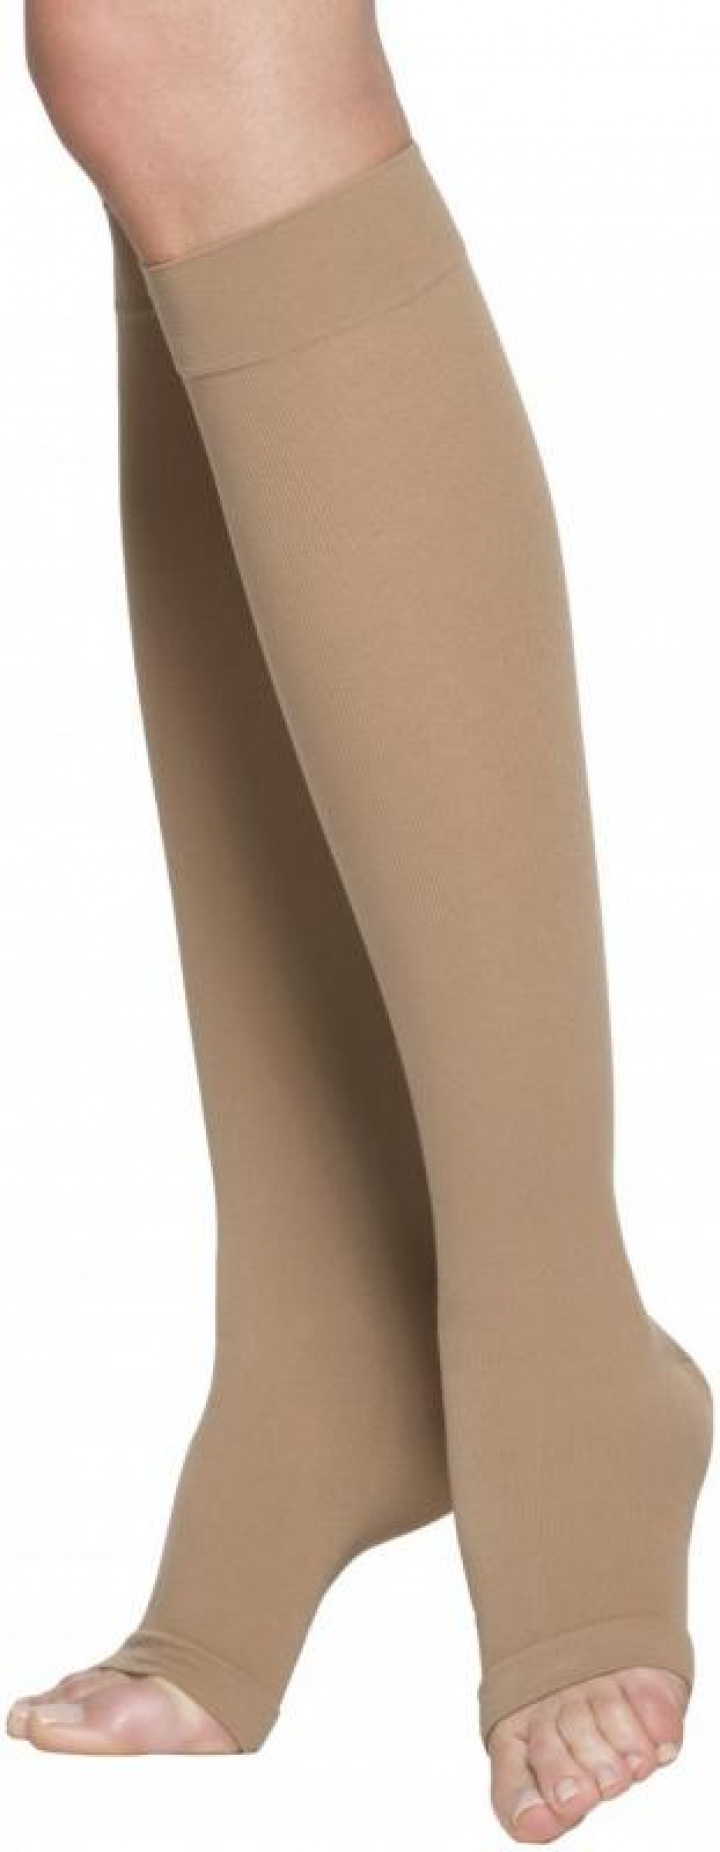 Meia elástica de compressão grau 2 AD (Até ao joelho) sem biqueira, com fio de algodão, ideal para peles sensíveis Sigvaris Cotton (Par)